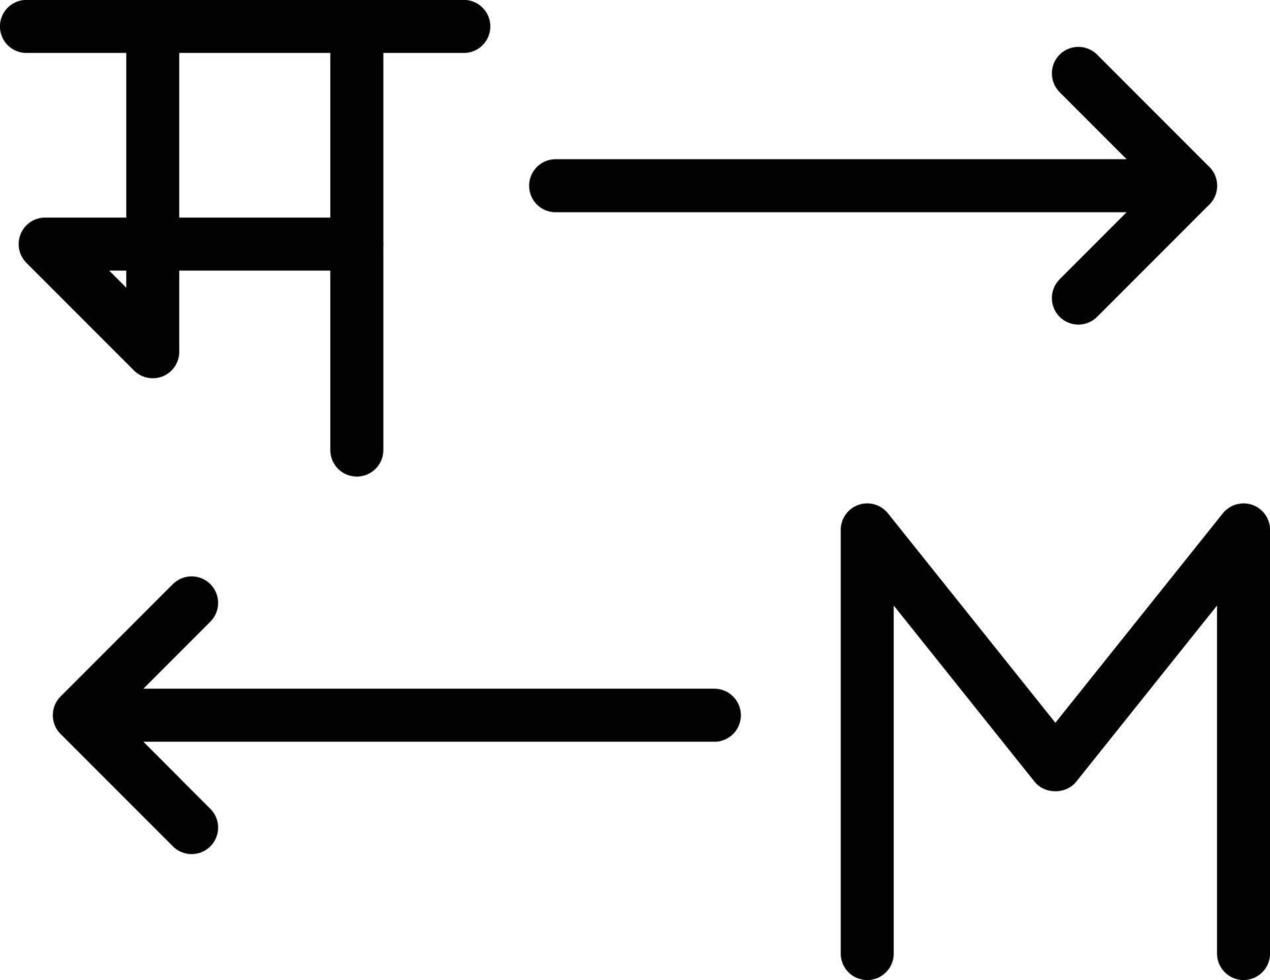 übersetzervektorillustration auf einem hintergrund. hochwertige symbole. vektorikonen für konzept und grafikdesign. vektor